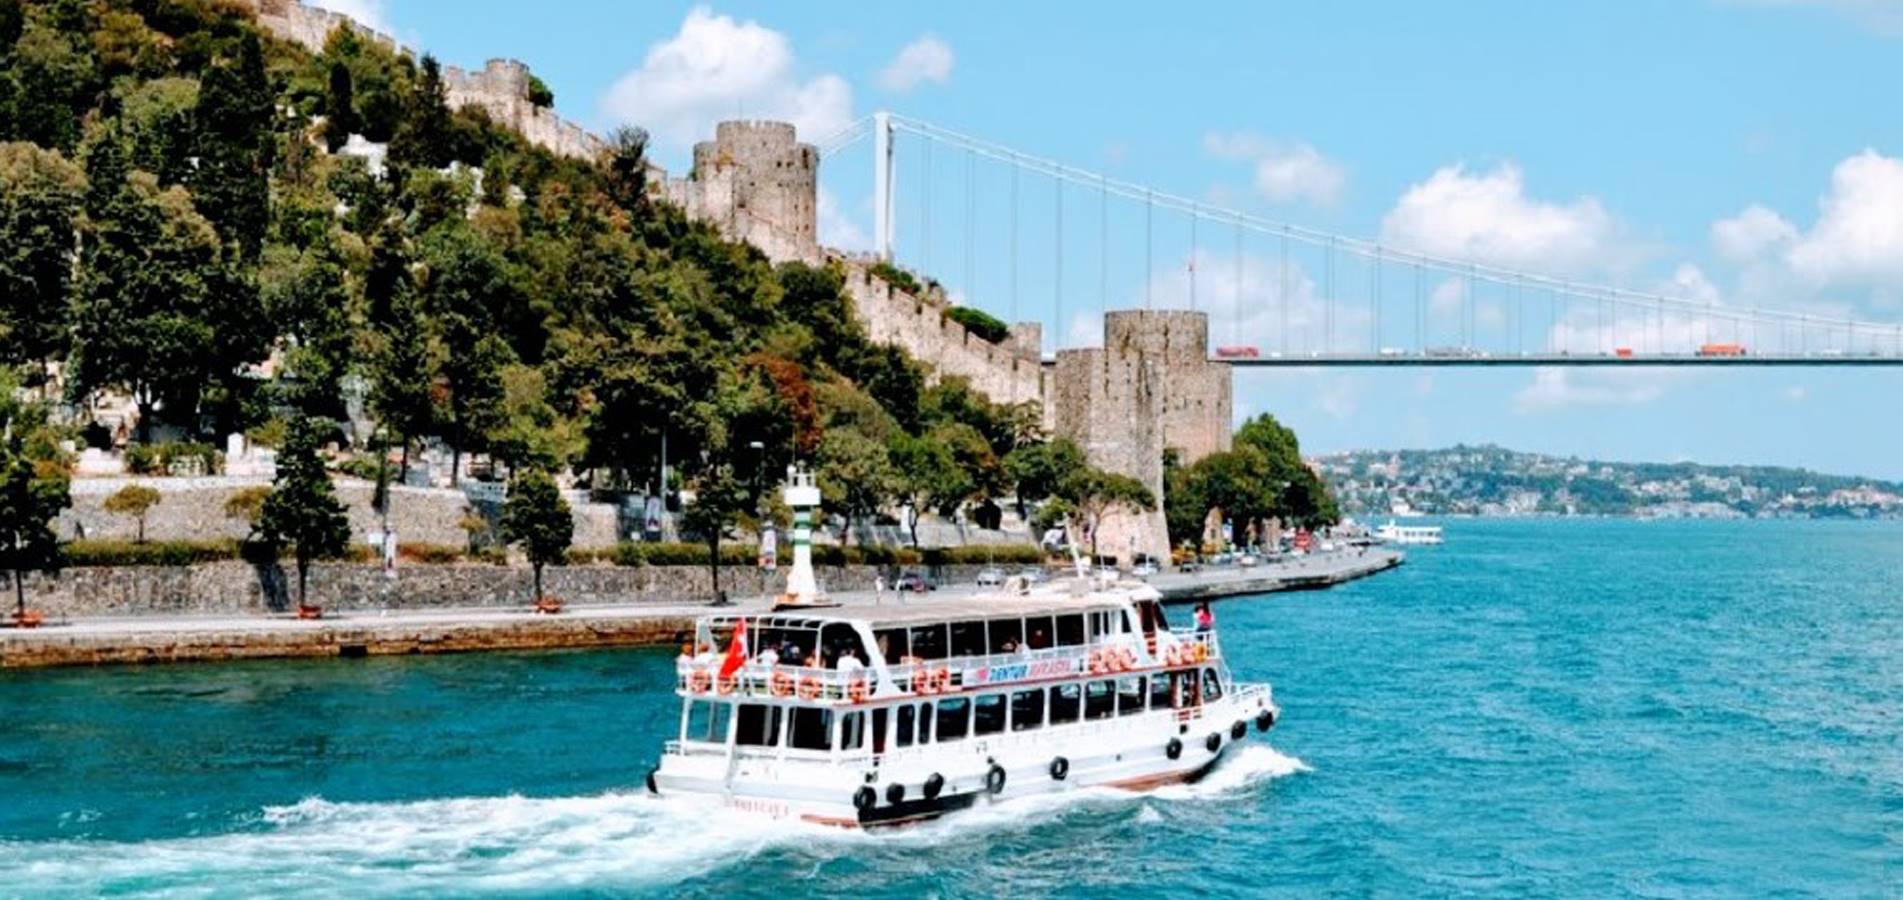 السياحة في تركيا 2021: شركة مقام للسياحة - رحلات يومية